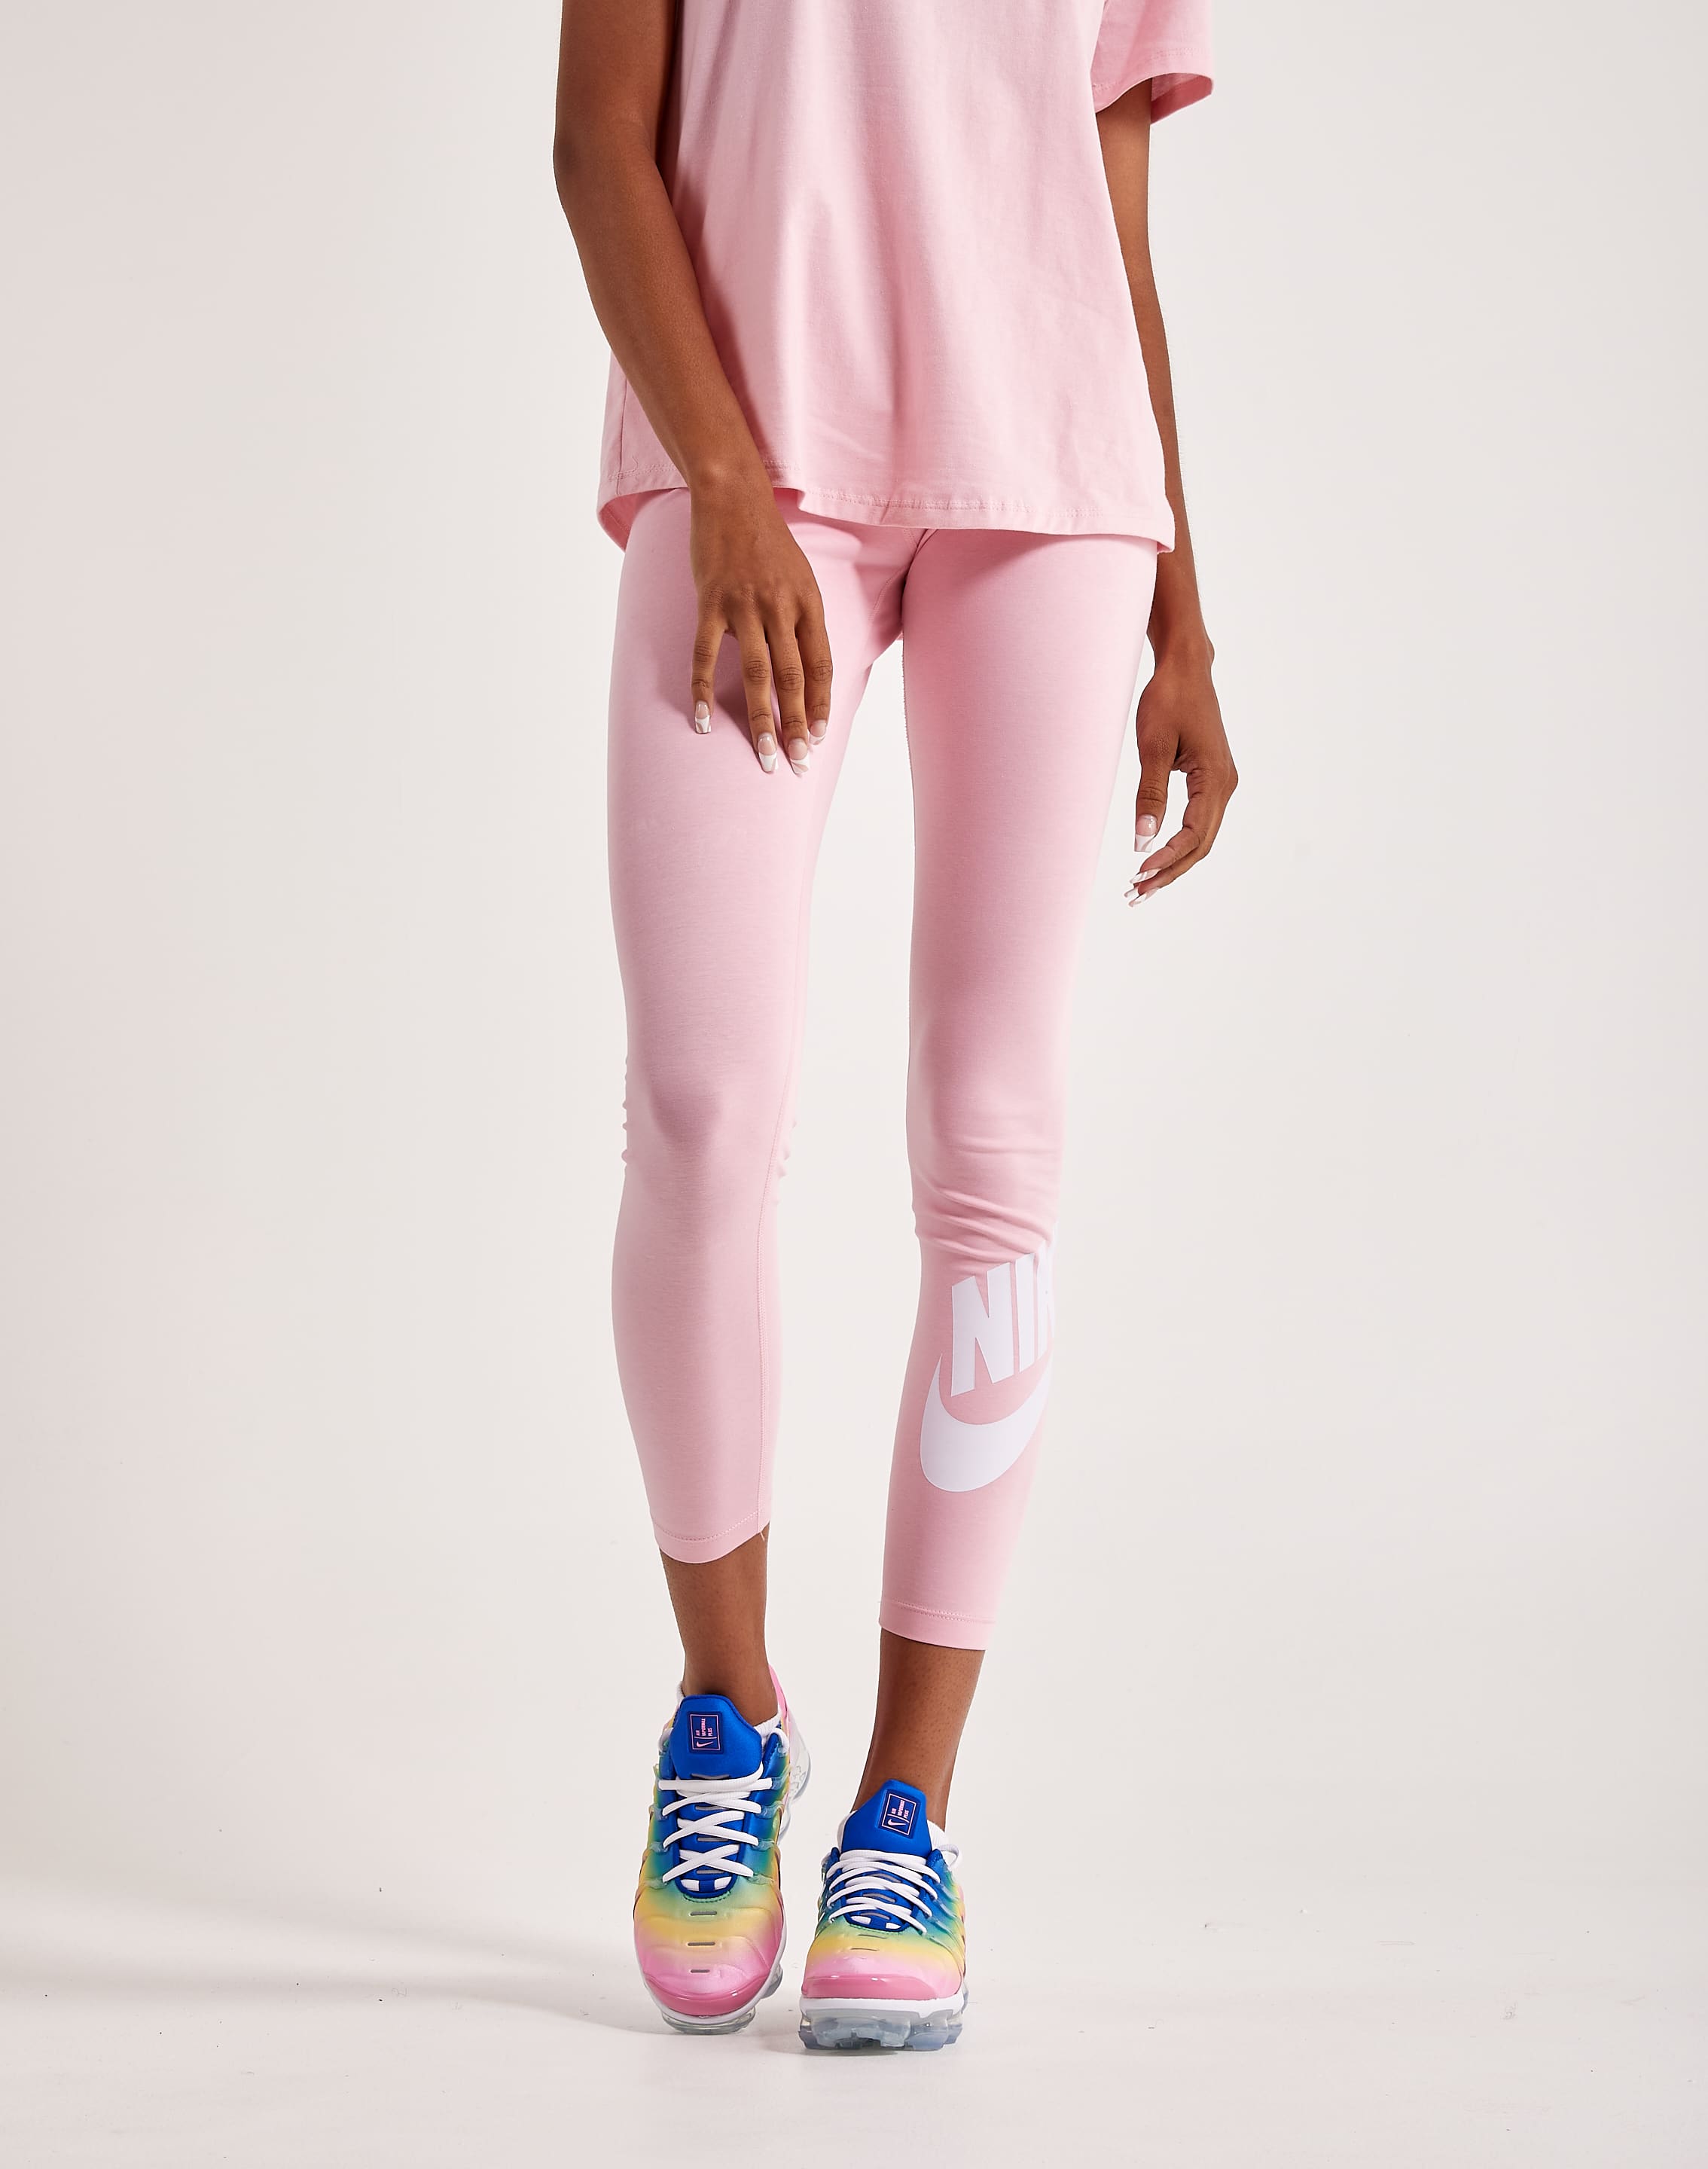 NIKE PRO Women DRI-FIT Two Tone Pink Stretch Capri Leggings Size XL 